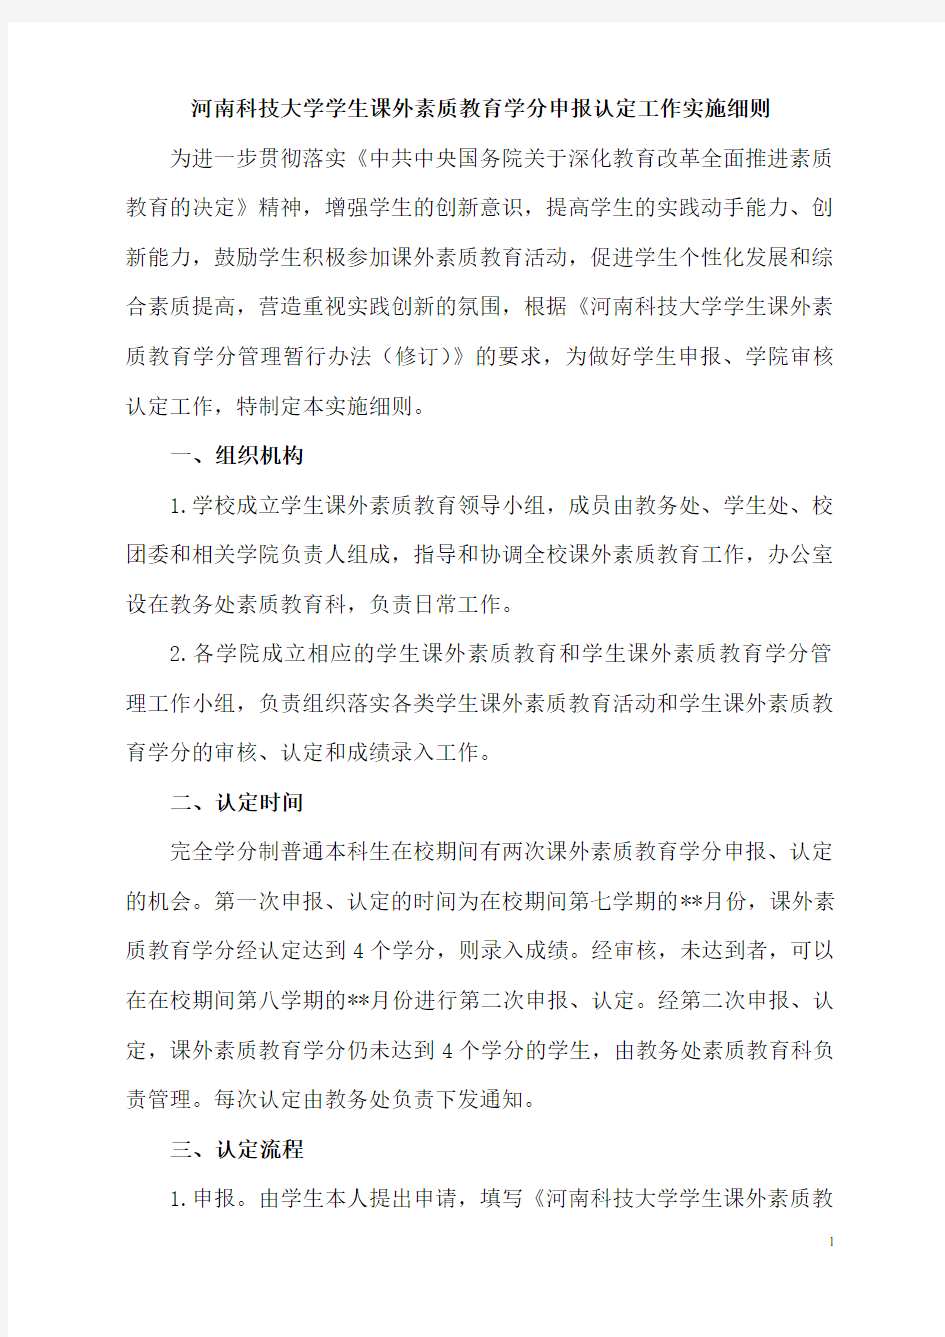 河南科技大学学生课外素质教育学分申报认定工作实施细则